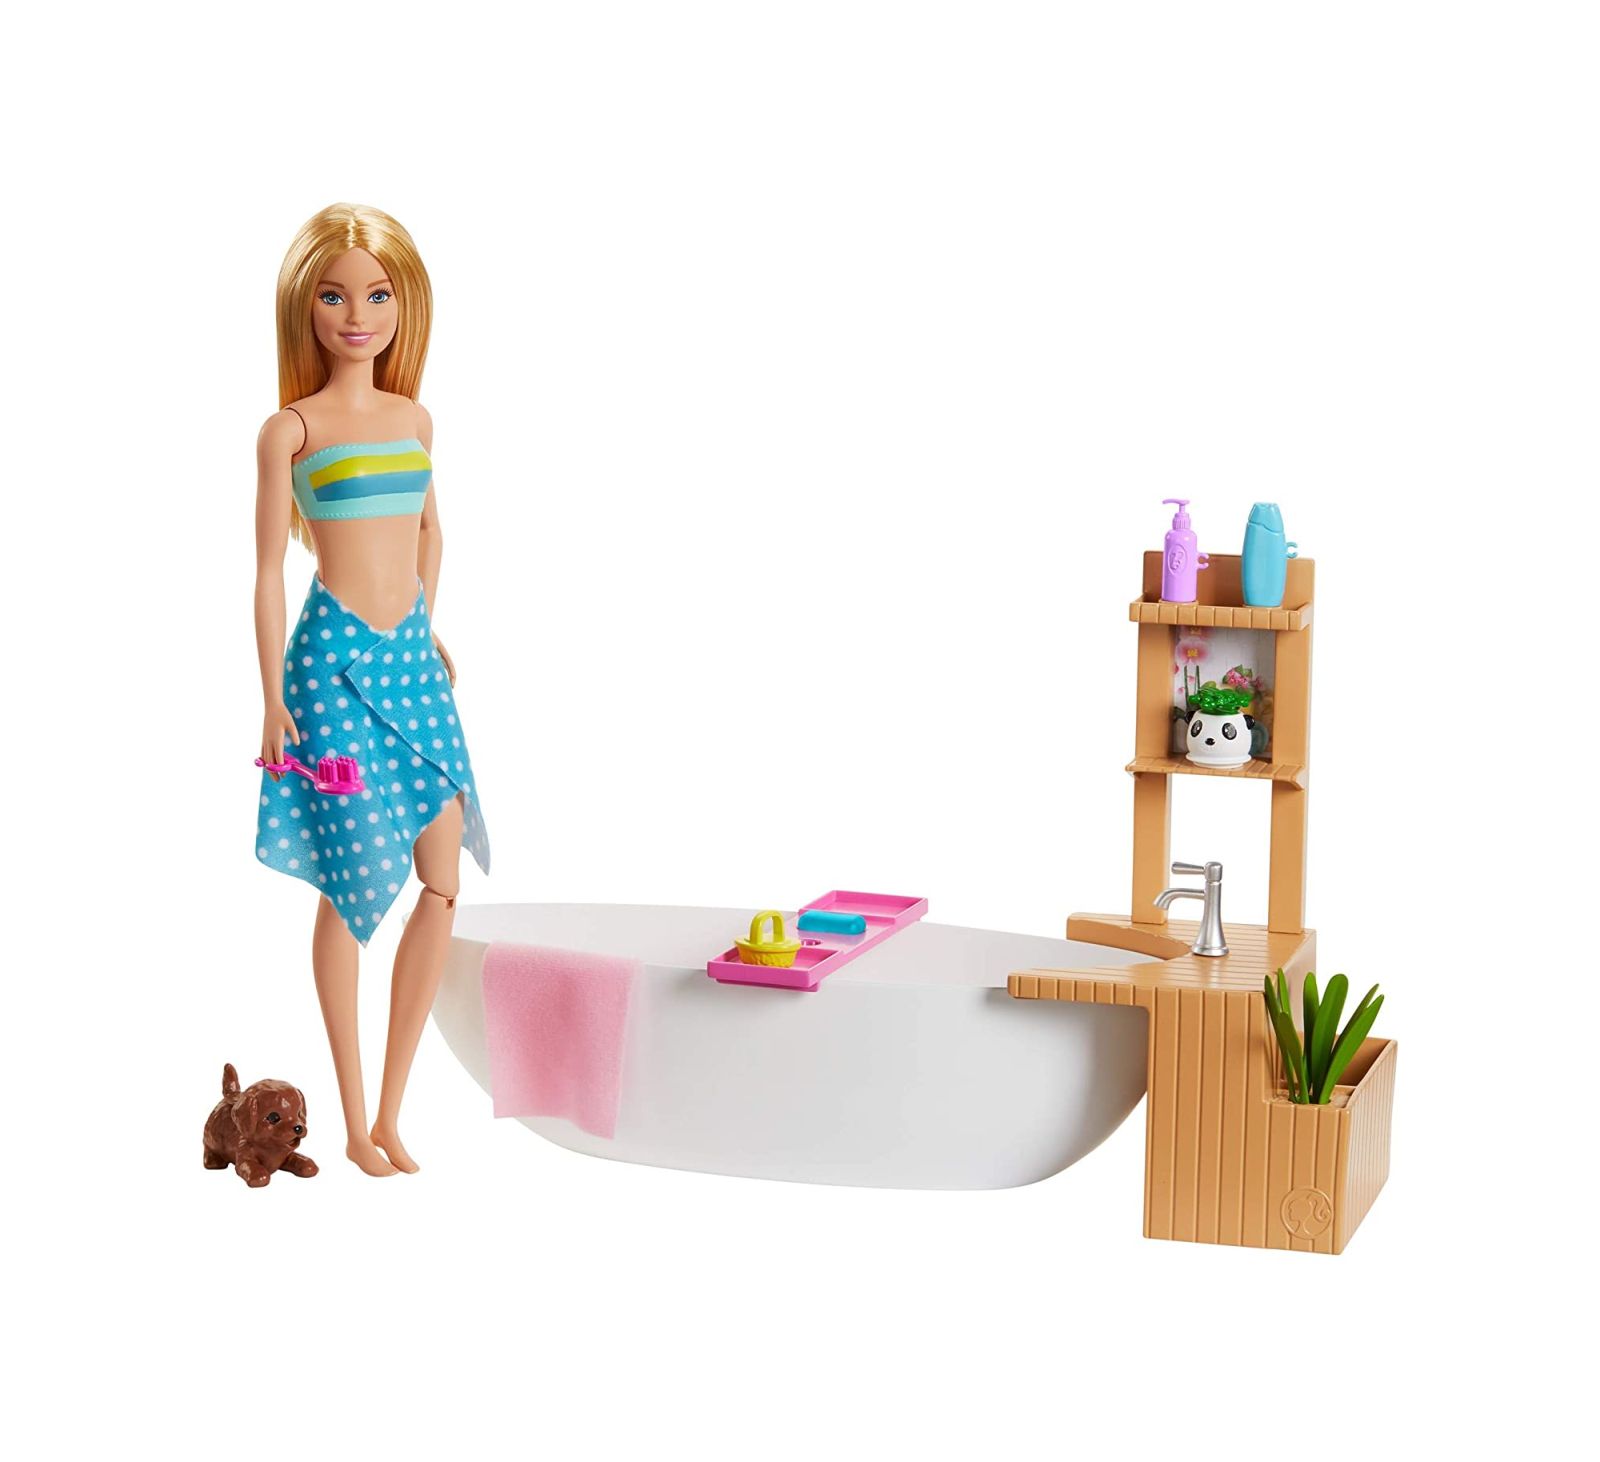 Bambola Barbie dimensioni vasca d'angolo in legno per bambole 